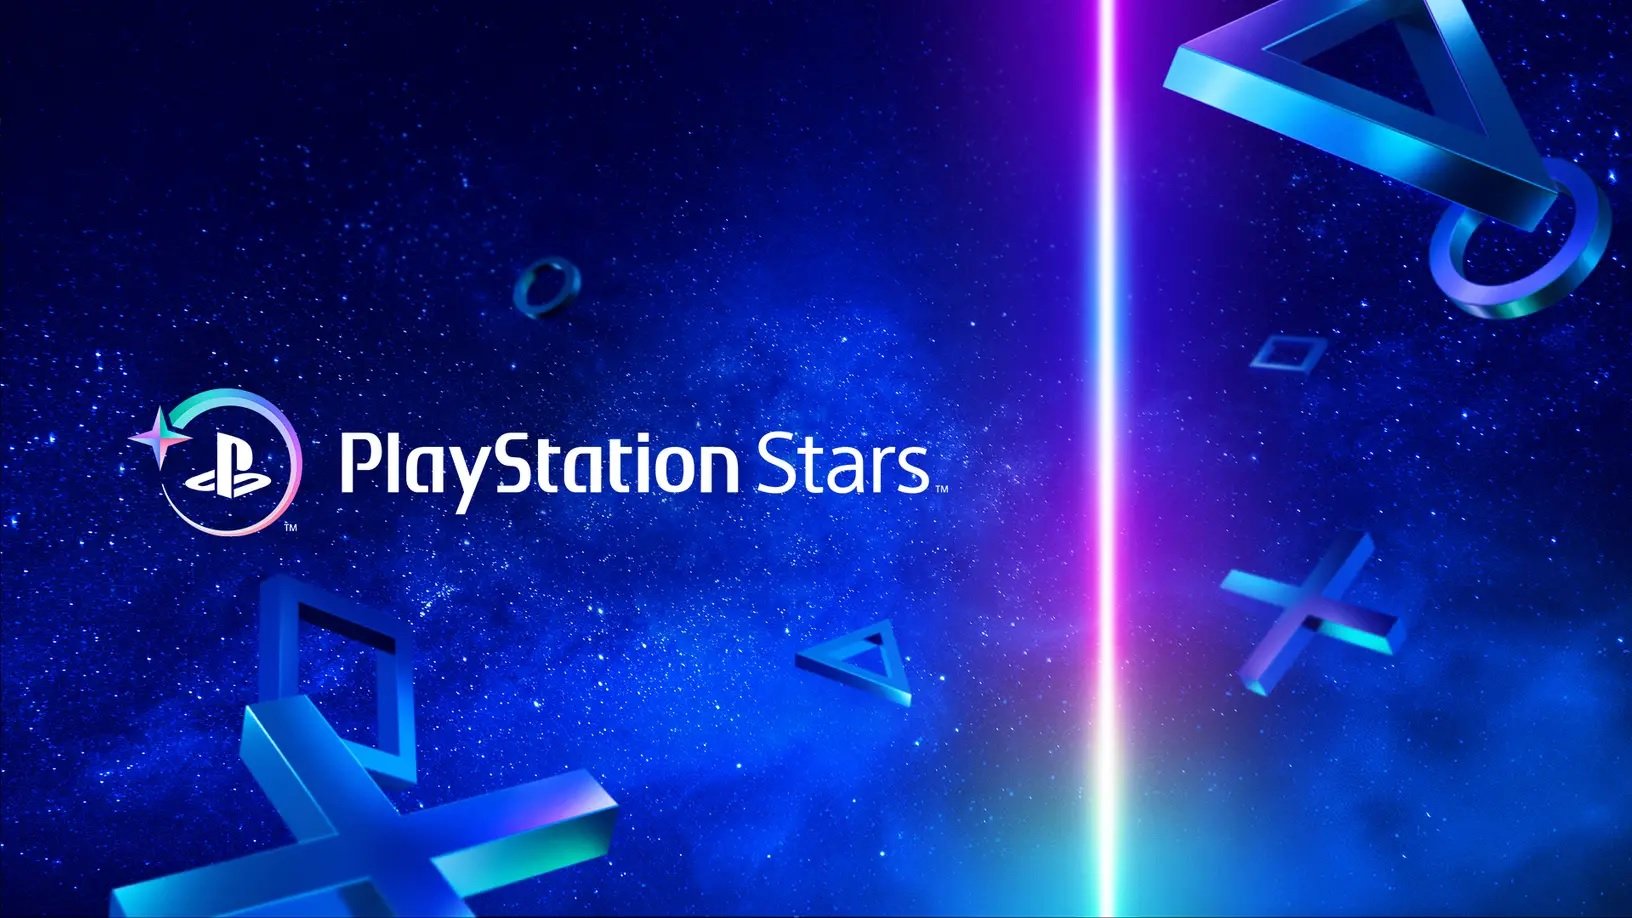 PlayStation Stars REWARDS Program Revealed - Definitely Not NFTs